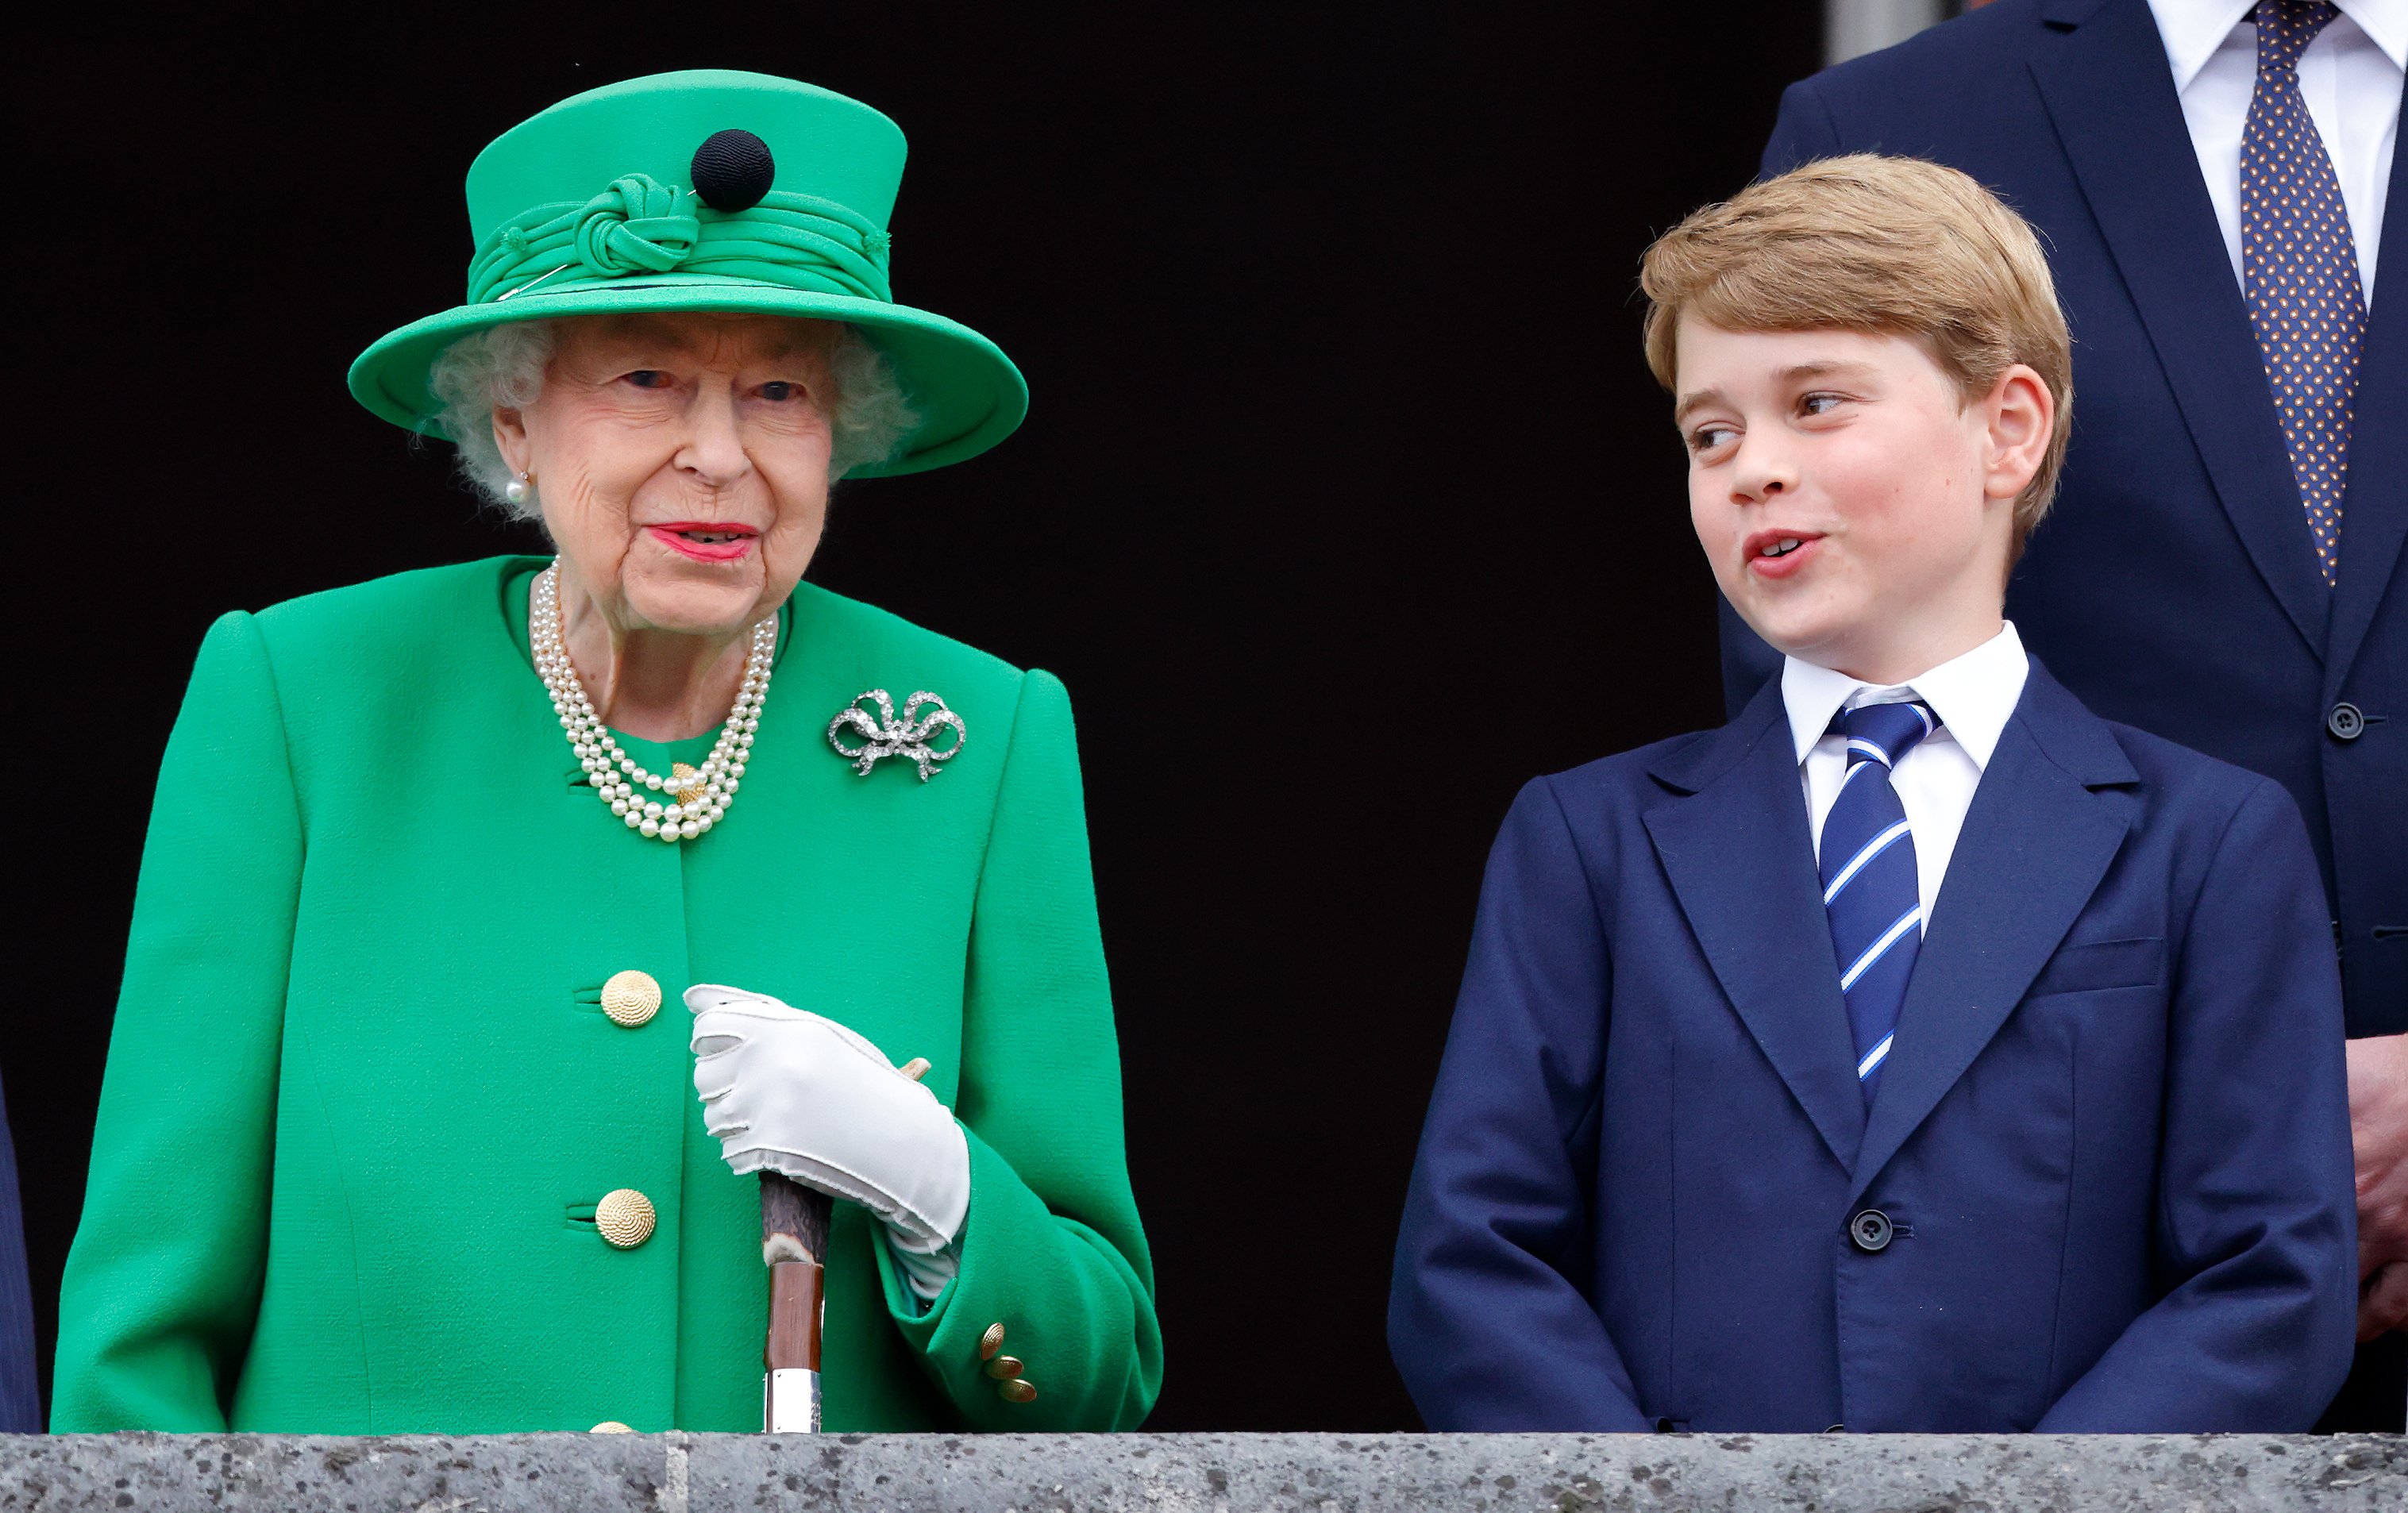 Kraliçe II. Elizabeth ve Prens George, 5 Haziran 2022'de Londra, İngiltere'de düzenlenen Platinum Yarışması'nın ardından Buckingham Sarayı'nın balkonunda duruyor.  |  Kaynak: Getty Images